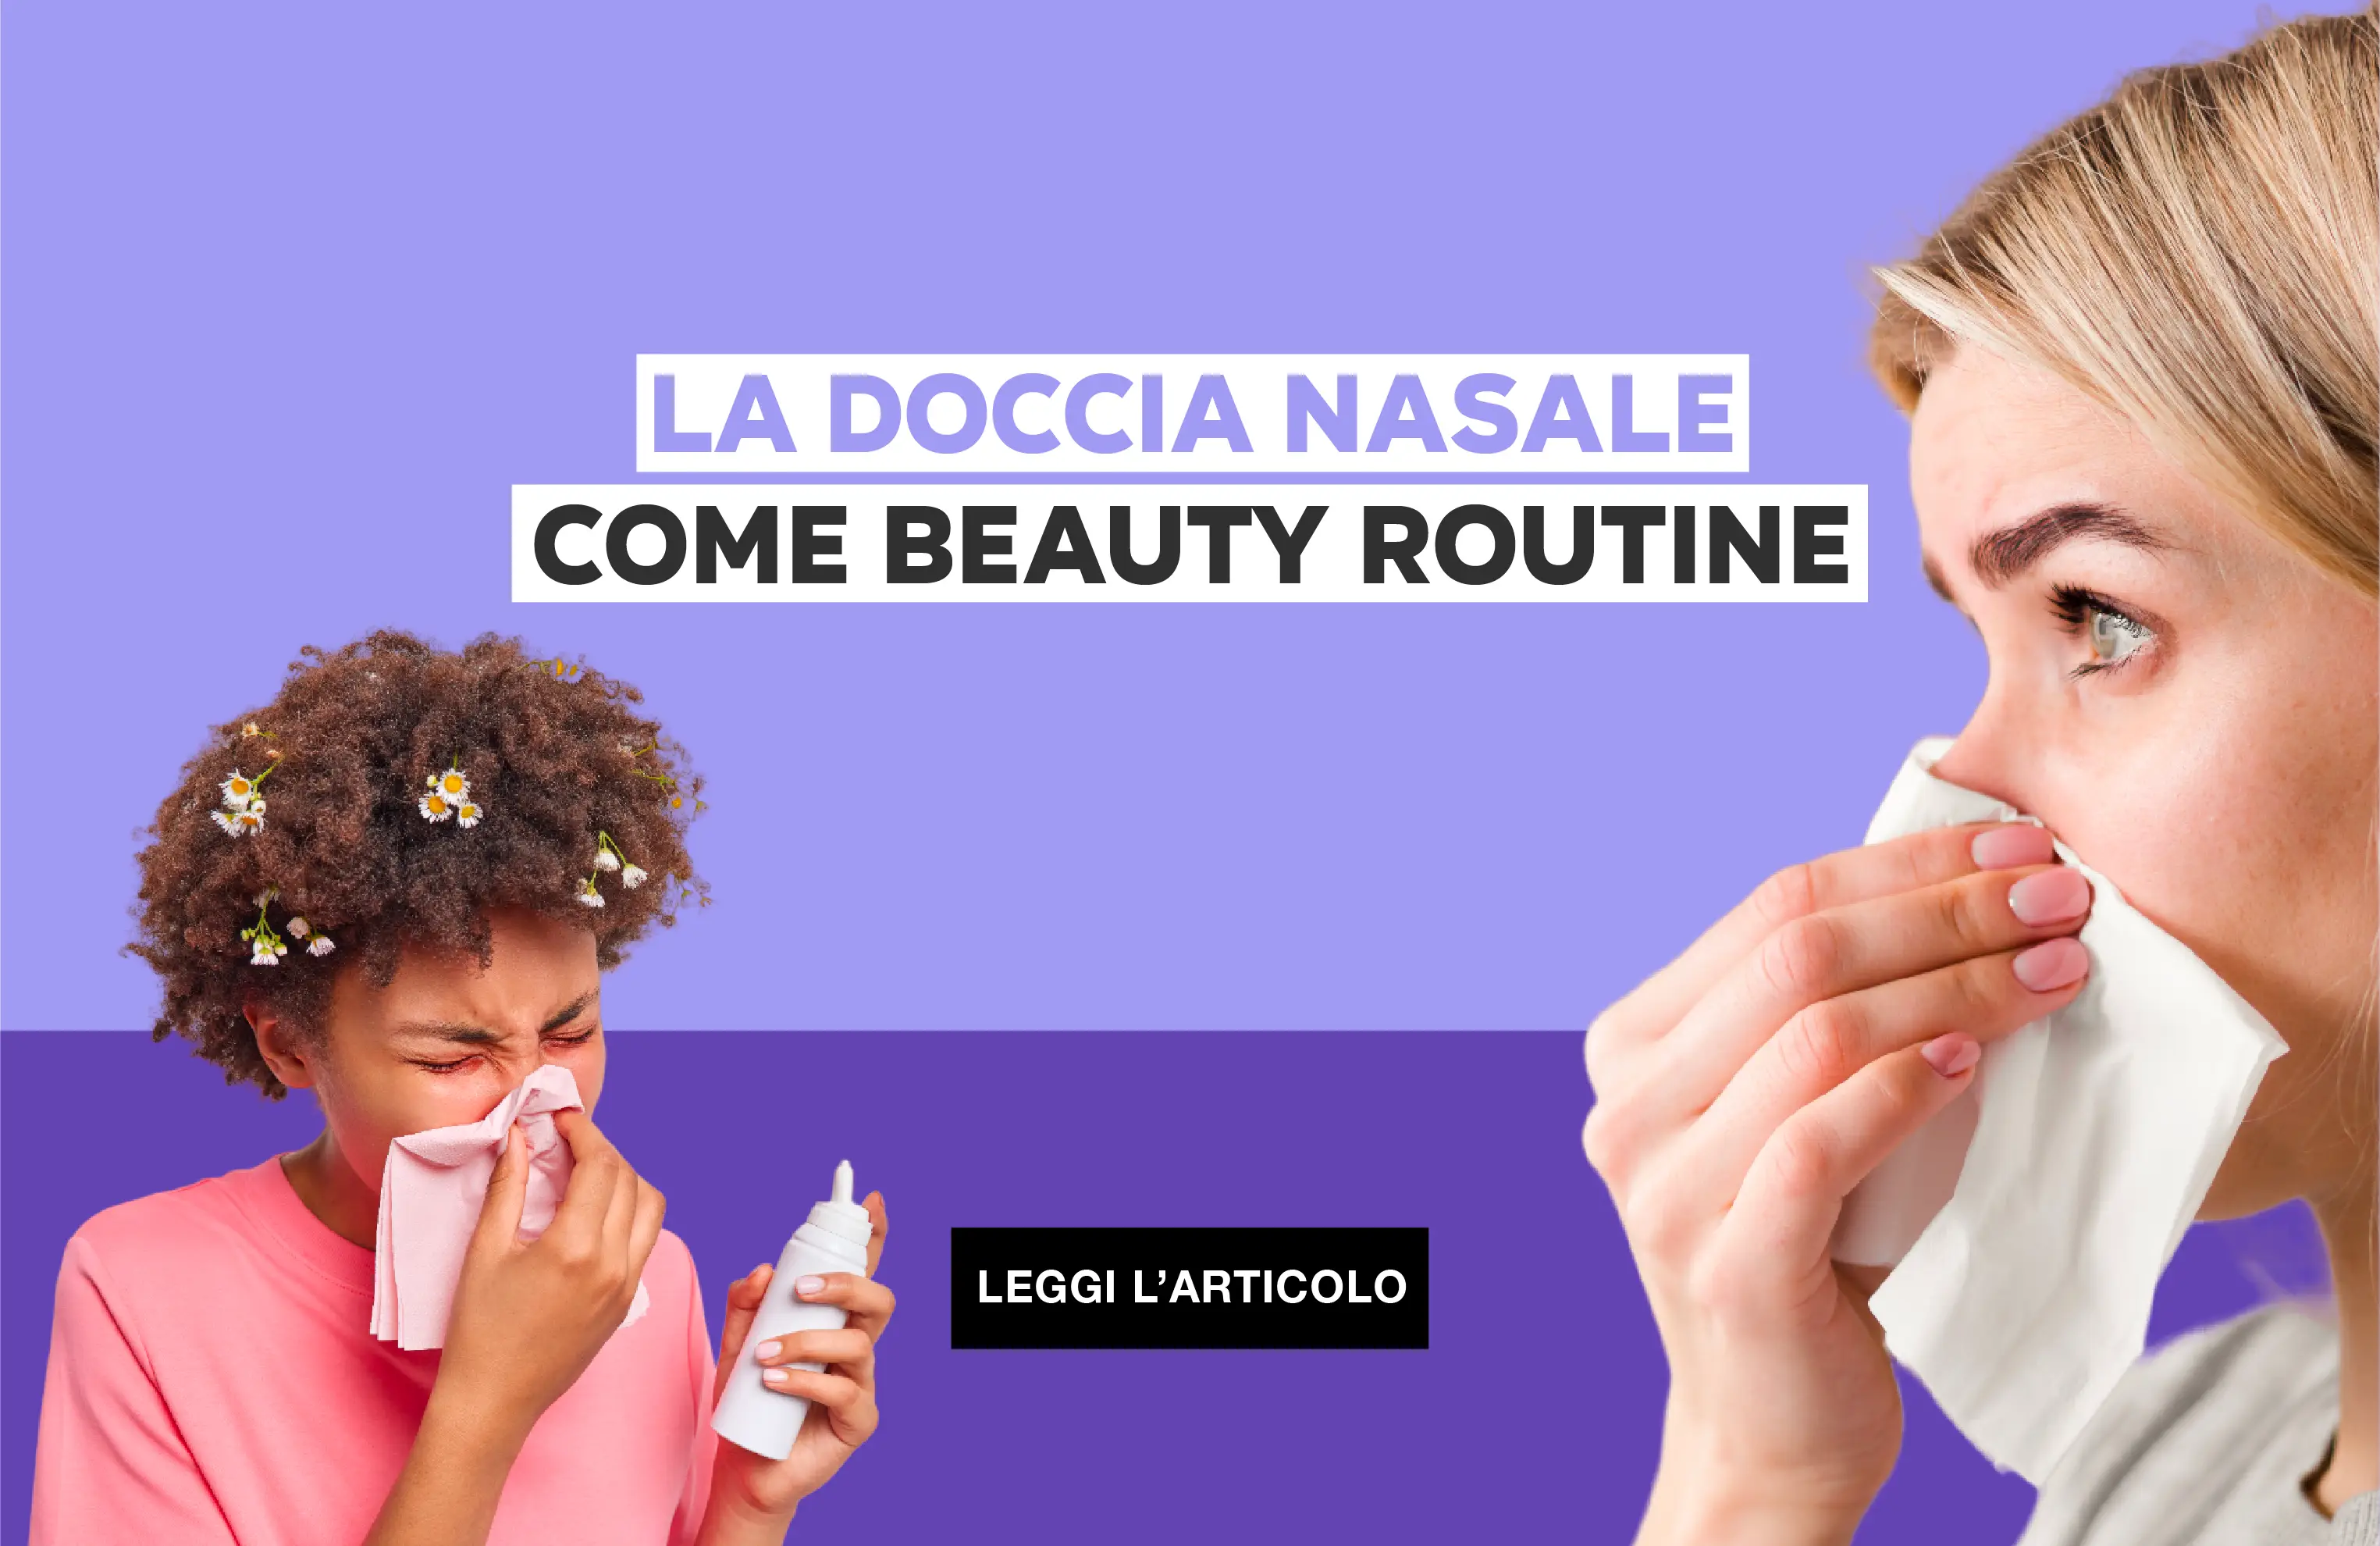 La doccia nasale come beauty routine.